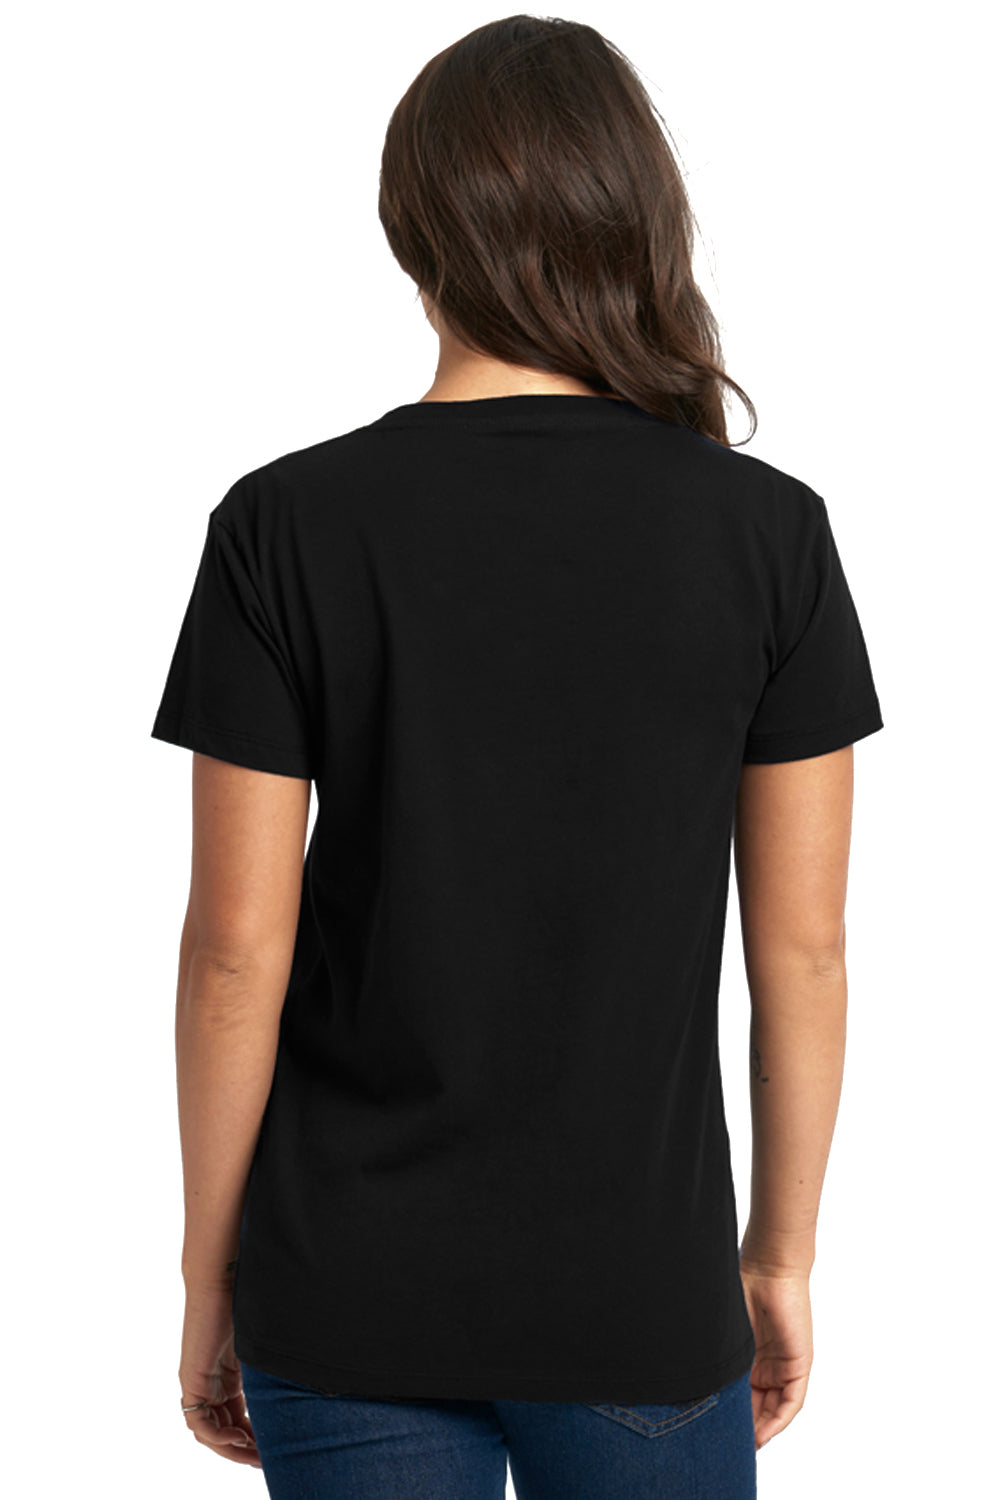 Next Level 3940 Womens Relaxed Short Sleeve V-Neck T-Shirt Black Back